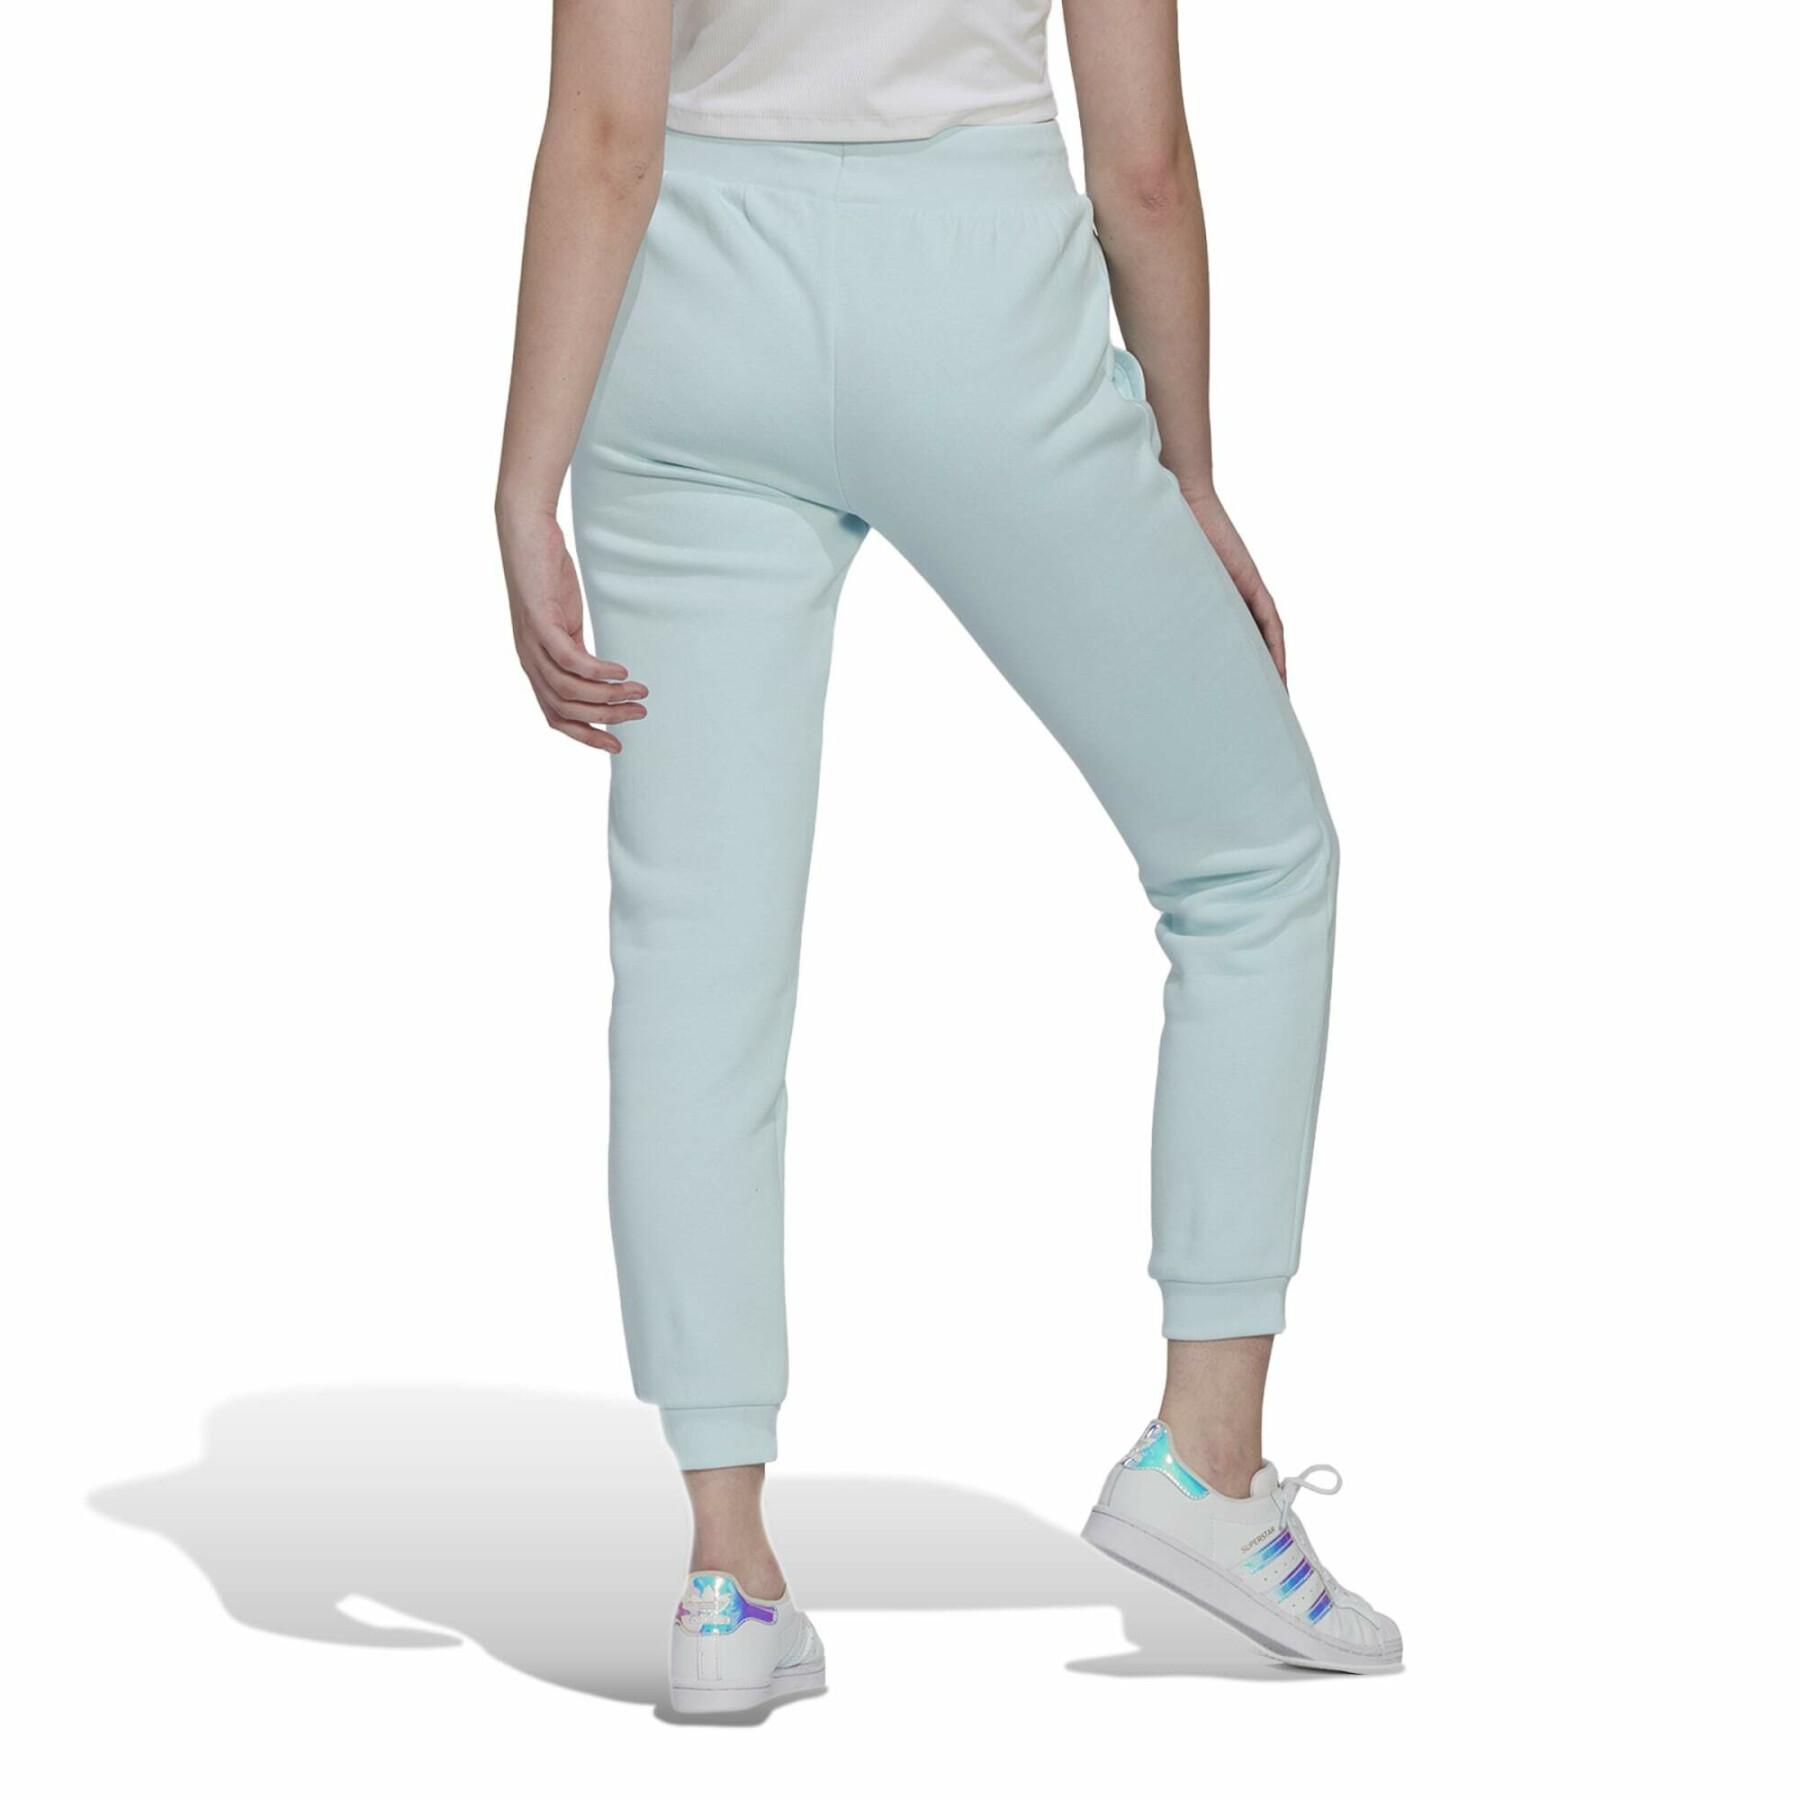 Women's slim-fit fleece jogging suit adidas Originals Adicolor Essentials